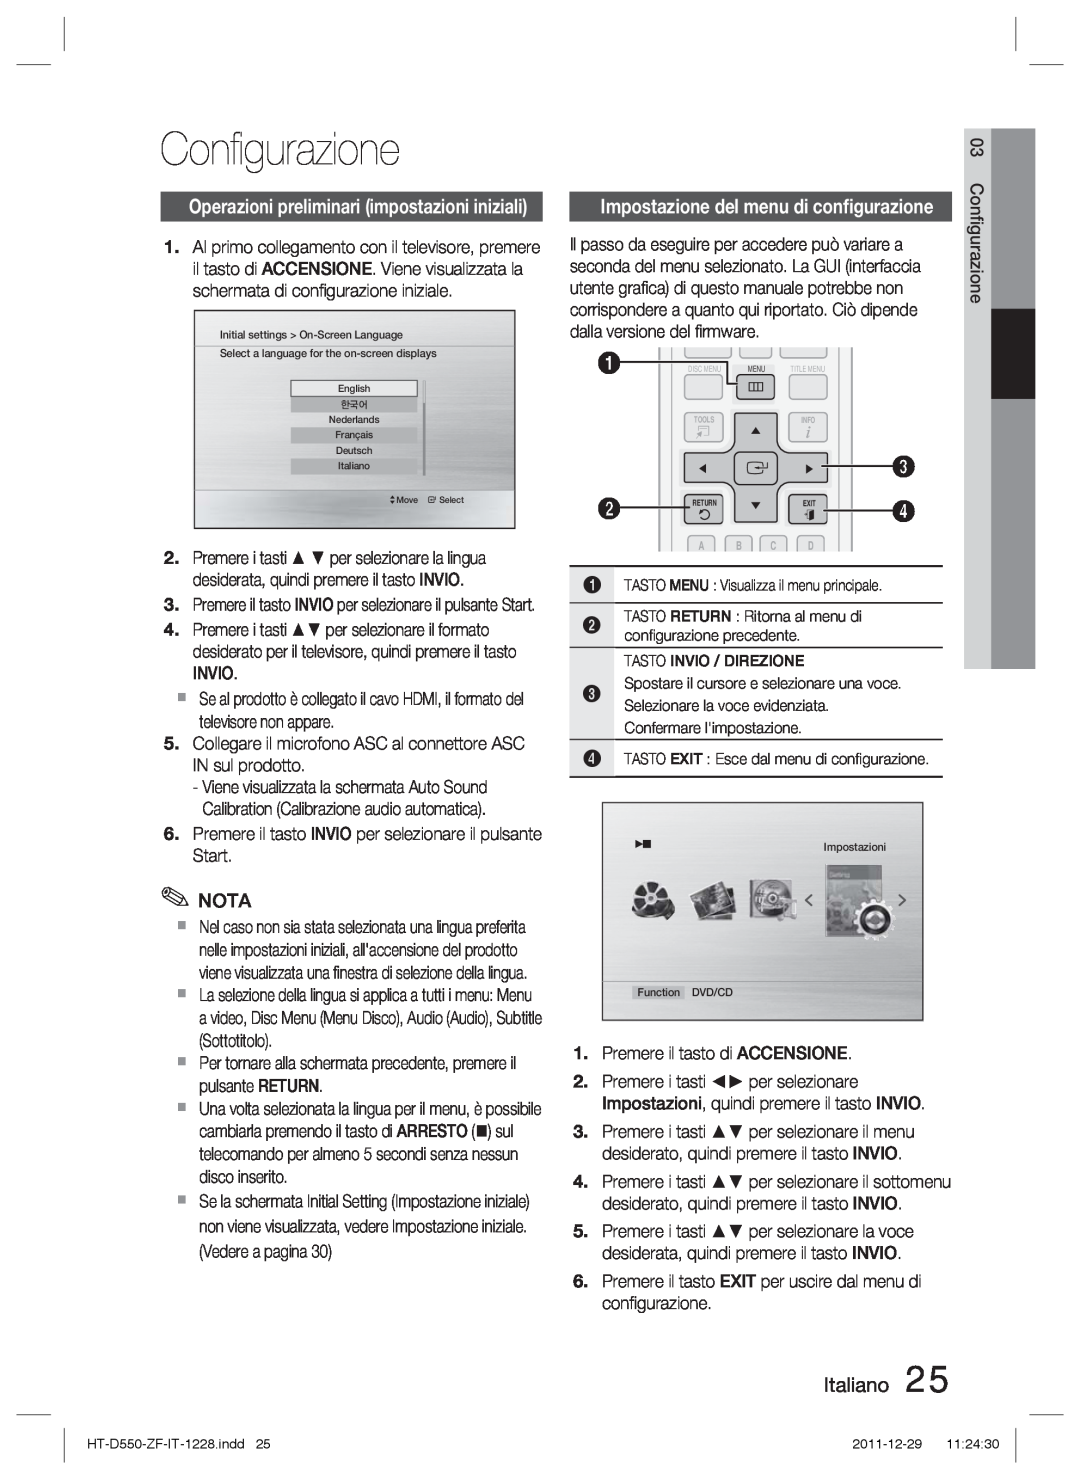 Samsung HT-D550/EN manual Conﬁgurazione, Italiano, Operazioni preliminari impostazioni iniziali, dalla versione del ﬁrmware 